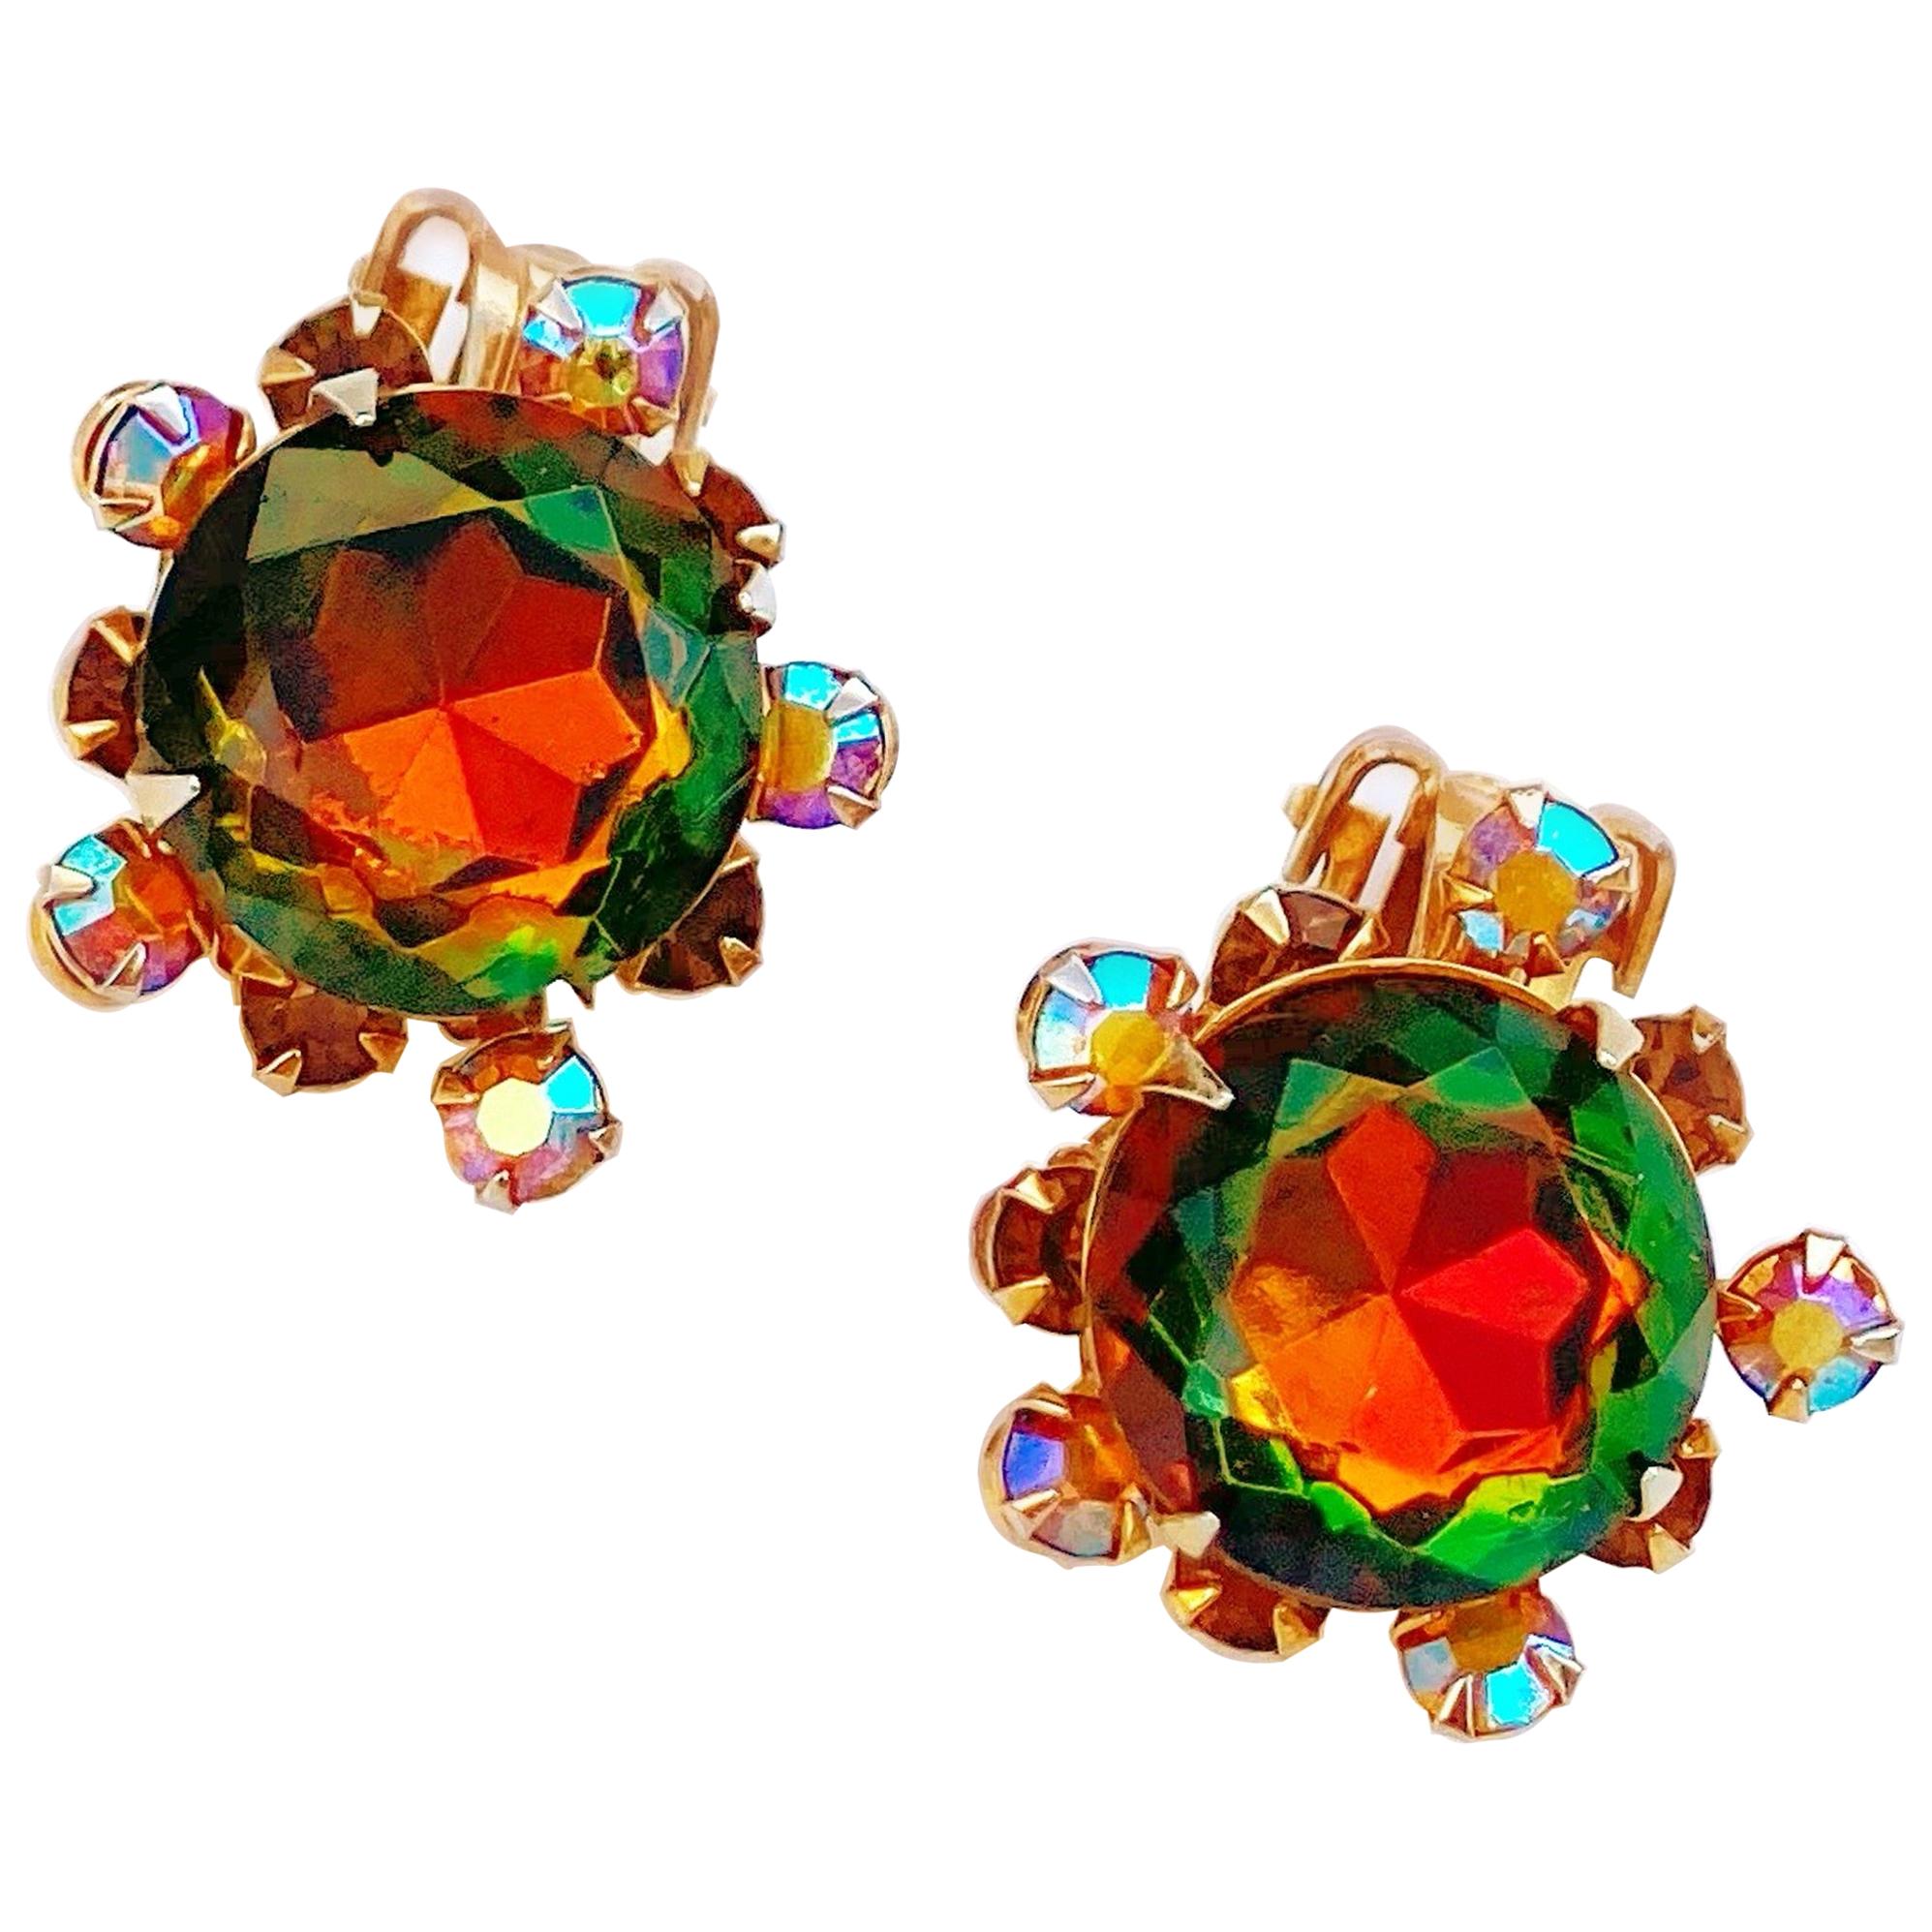 Vitrail & Aurora Borealis Crystal Rhinestone Earrings by Beau Jewels, 1960s